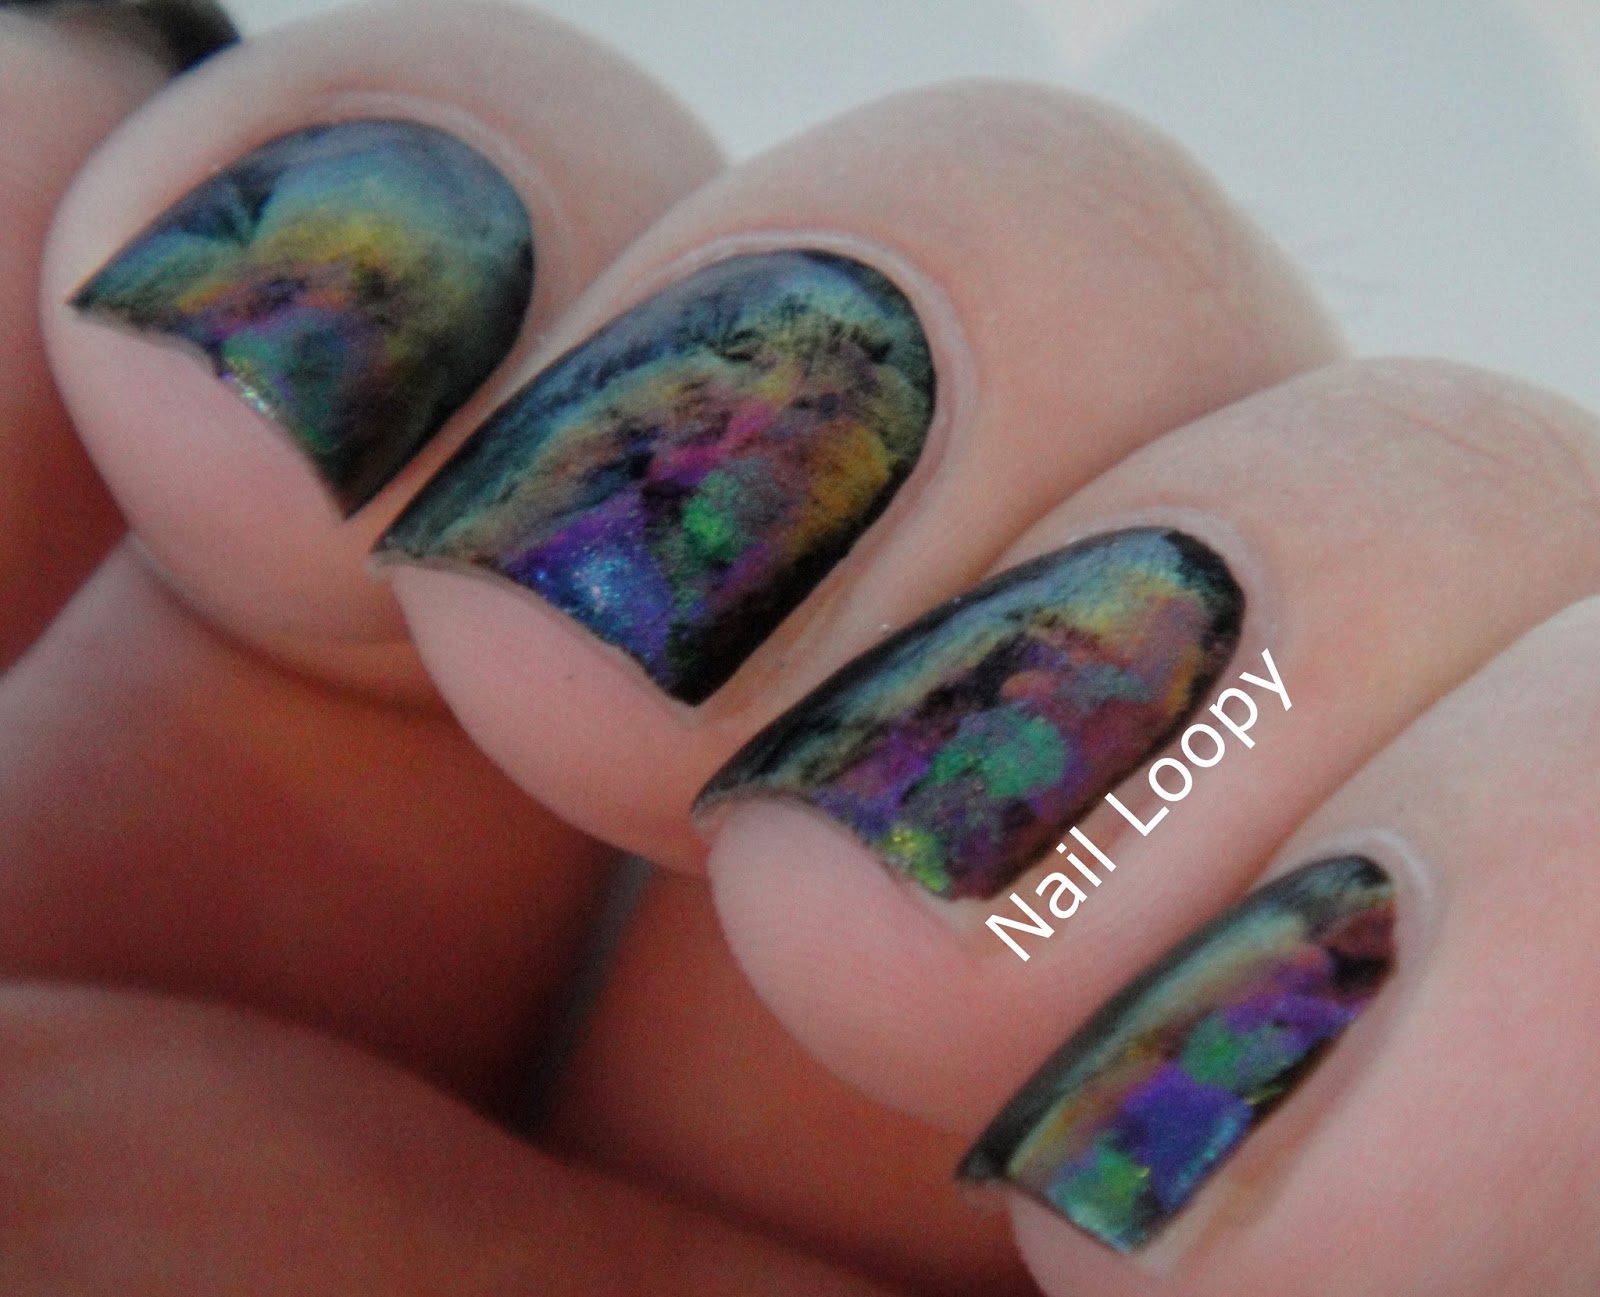 3. "Oil Spill" Nail Art Ideas - wide 4